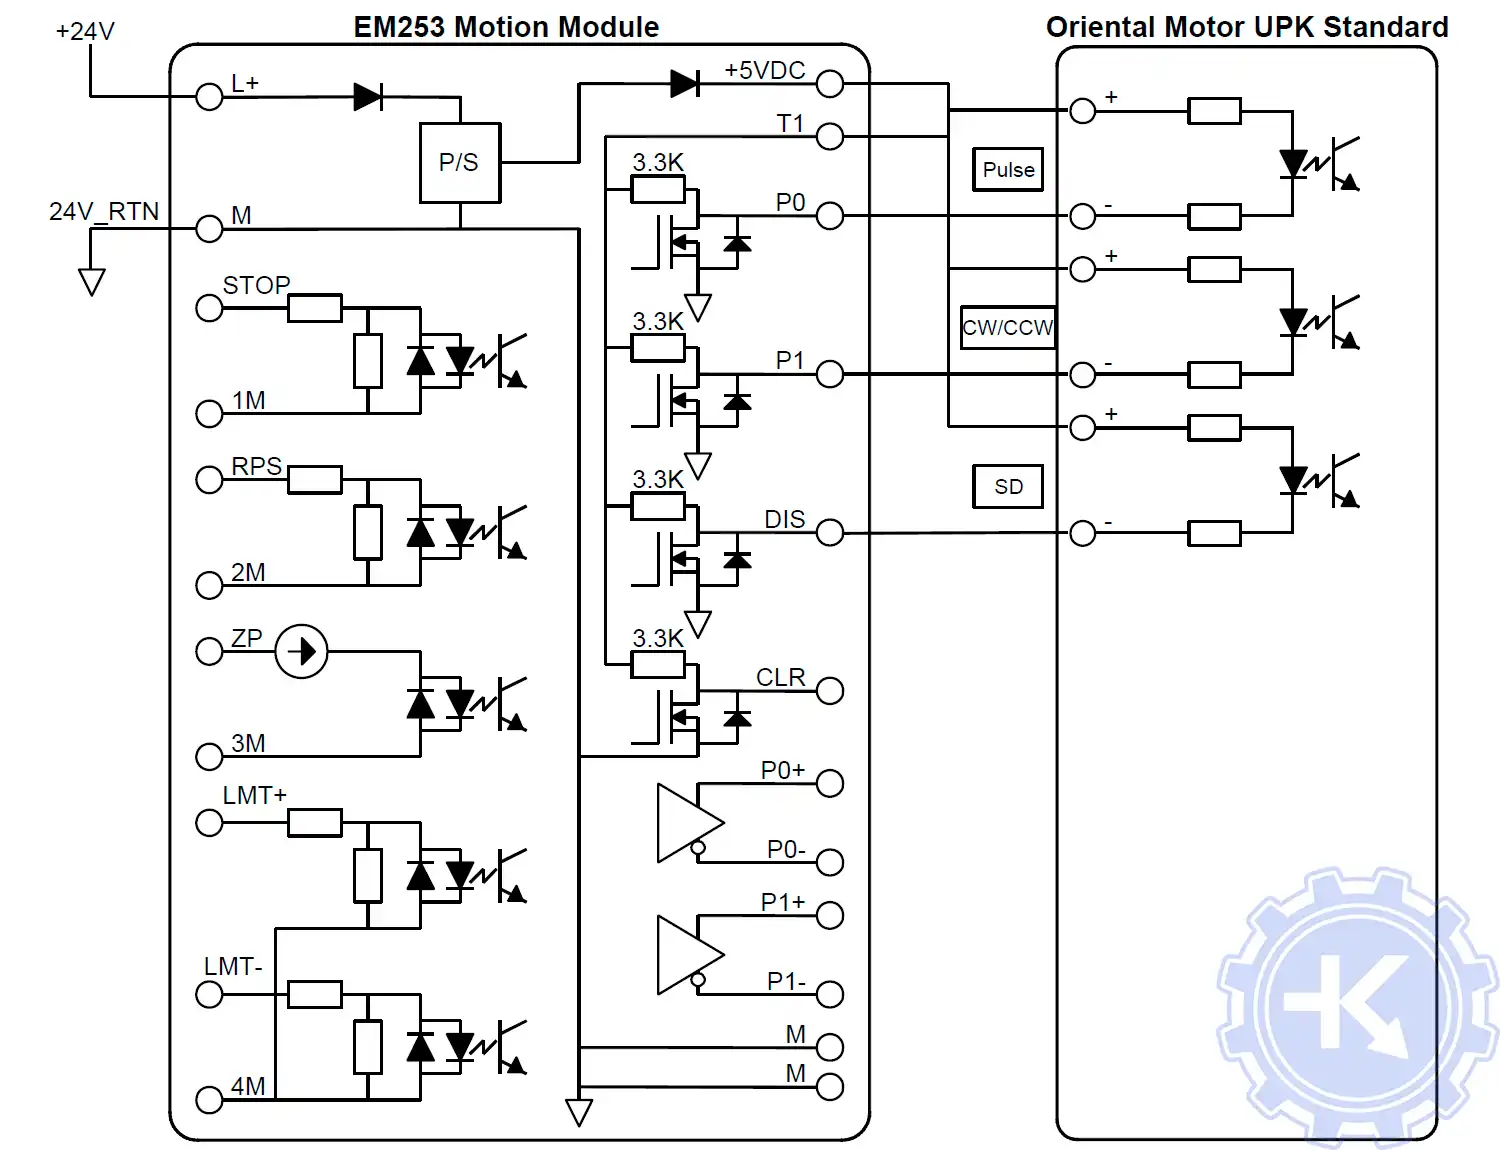 Схема подключения модуля позиционирования EM 253 к Oriental Motor UPK Standard